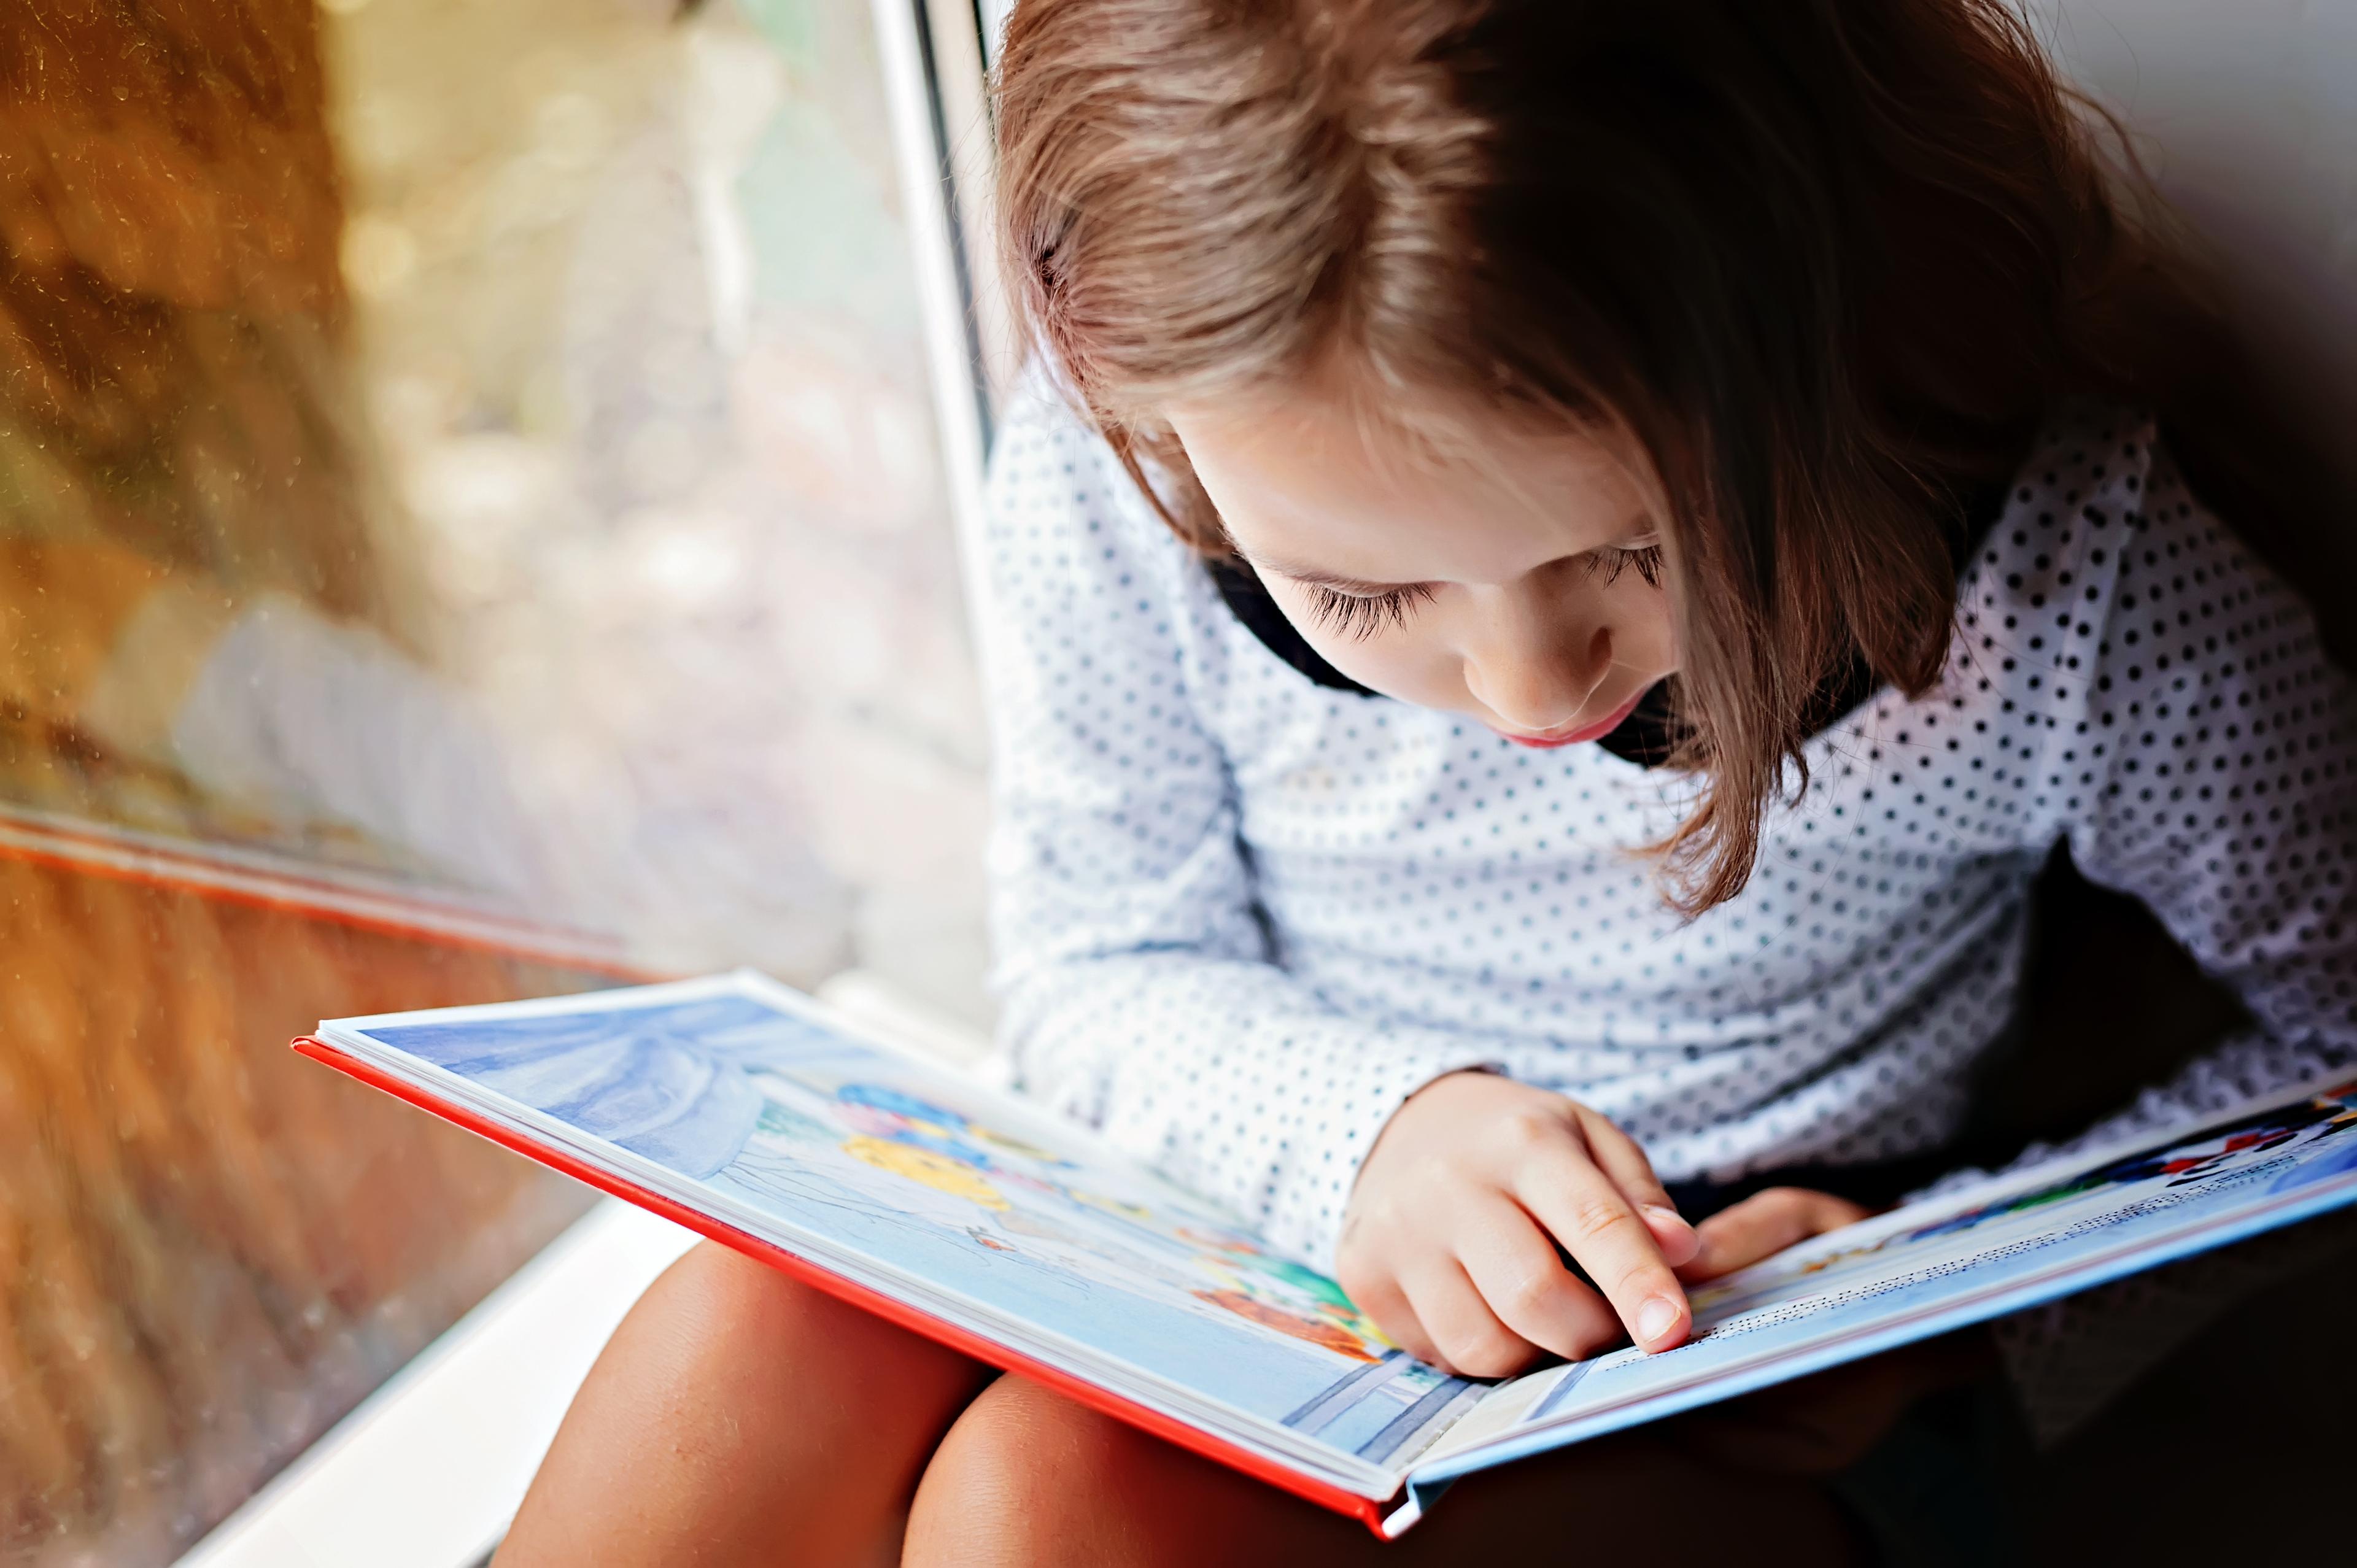 Finn bøker som passer til barnas interesser og sett av tid daglig til lesing- eller lytting.